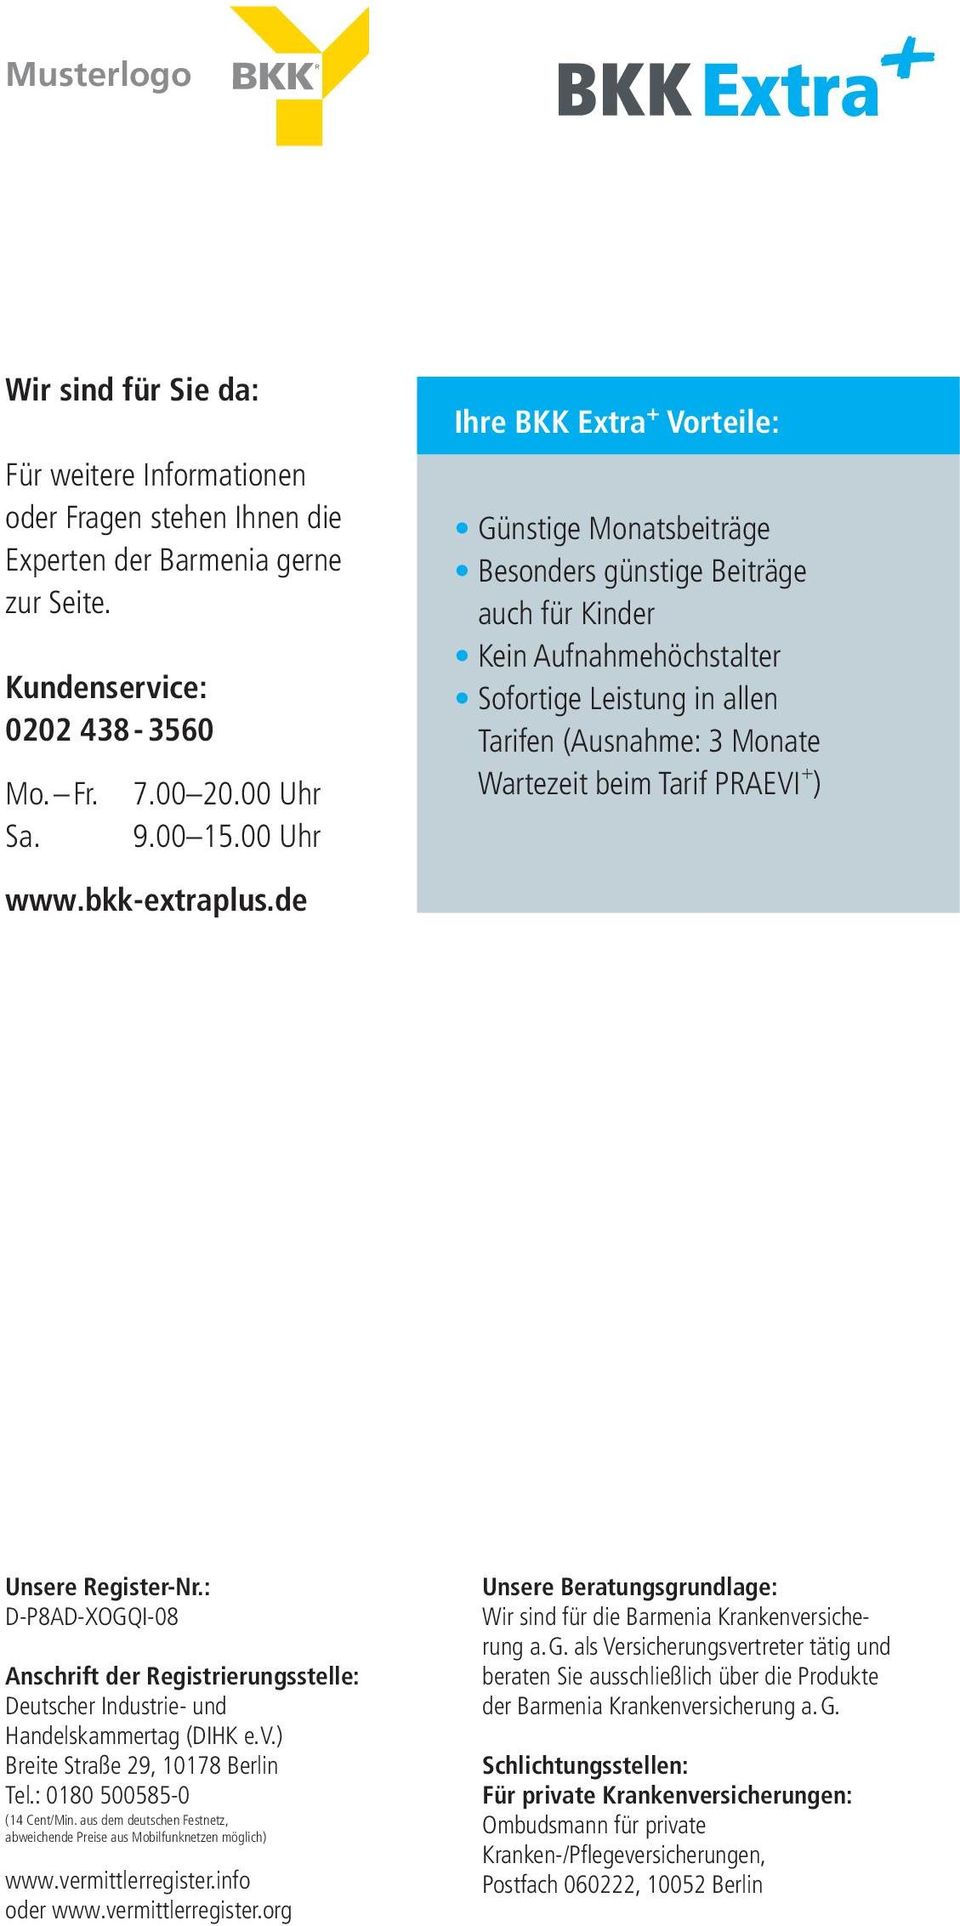 + ) www.bkk-extraplus.de Unsere Register-Nr.: D-P8AD-XOGQI-08 Anschrift der Registrierungsstelle: Deutscher Industrie- und Handelskammertag (DIHK e. V.) Breite Straße 29, 10178 Berlin Tel.